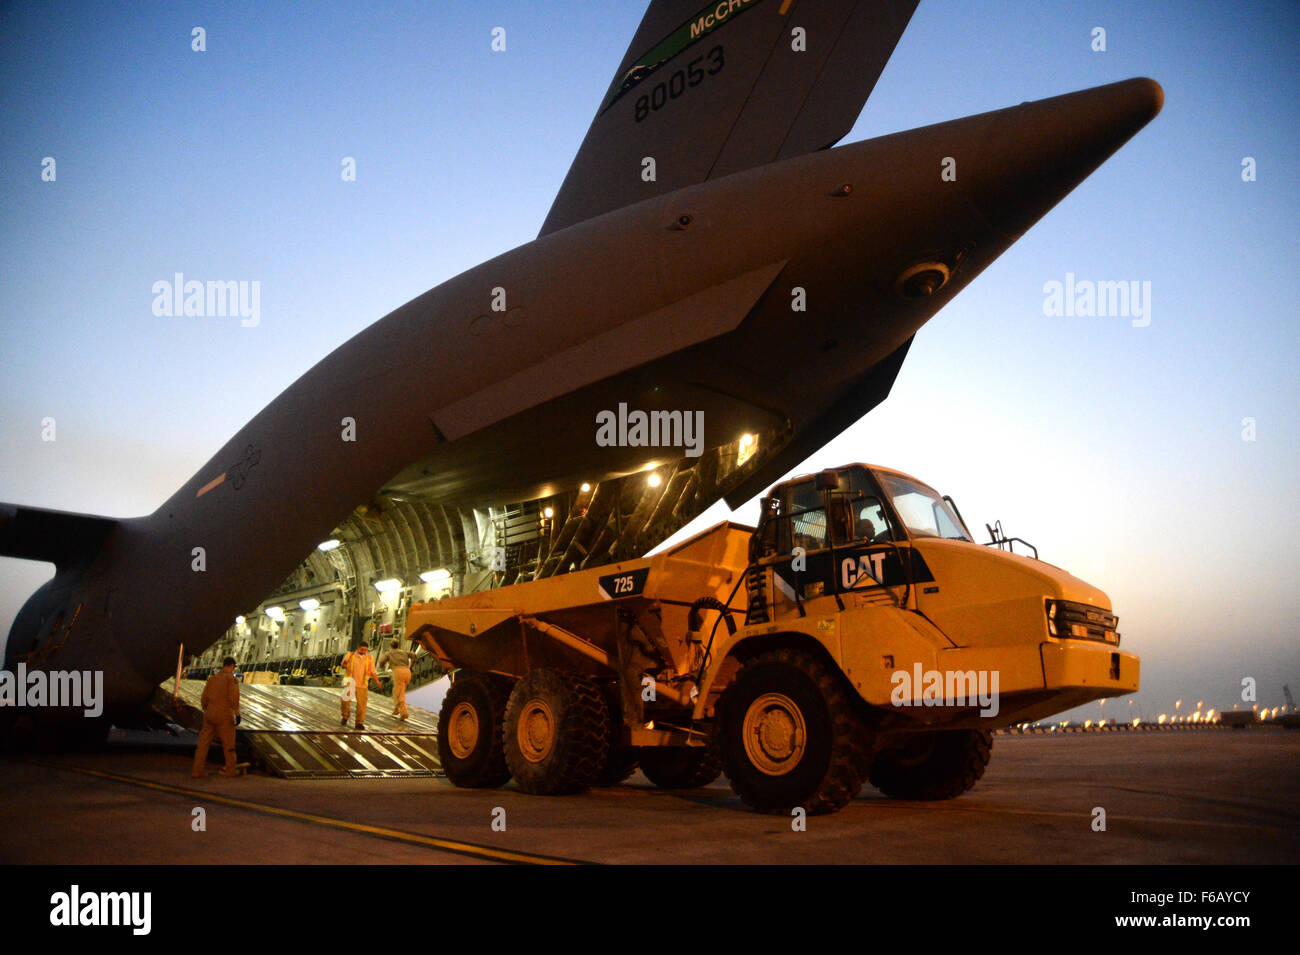 US Air Force Mitglieder entladen eine schwere Operationen Fahrzeug aus einer c-17 Globemaster III zur Unterstützung Betrieb innewohnende zu lösen, in Kuwait, 14. August 2015. OIR ist die militärische Intervention gegen Daesh. (Foto: U.S. Air Force Staff Sgt Sandra Welch) Stockfoto